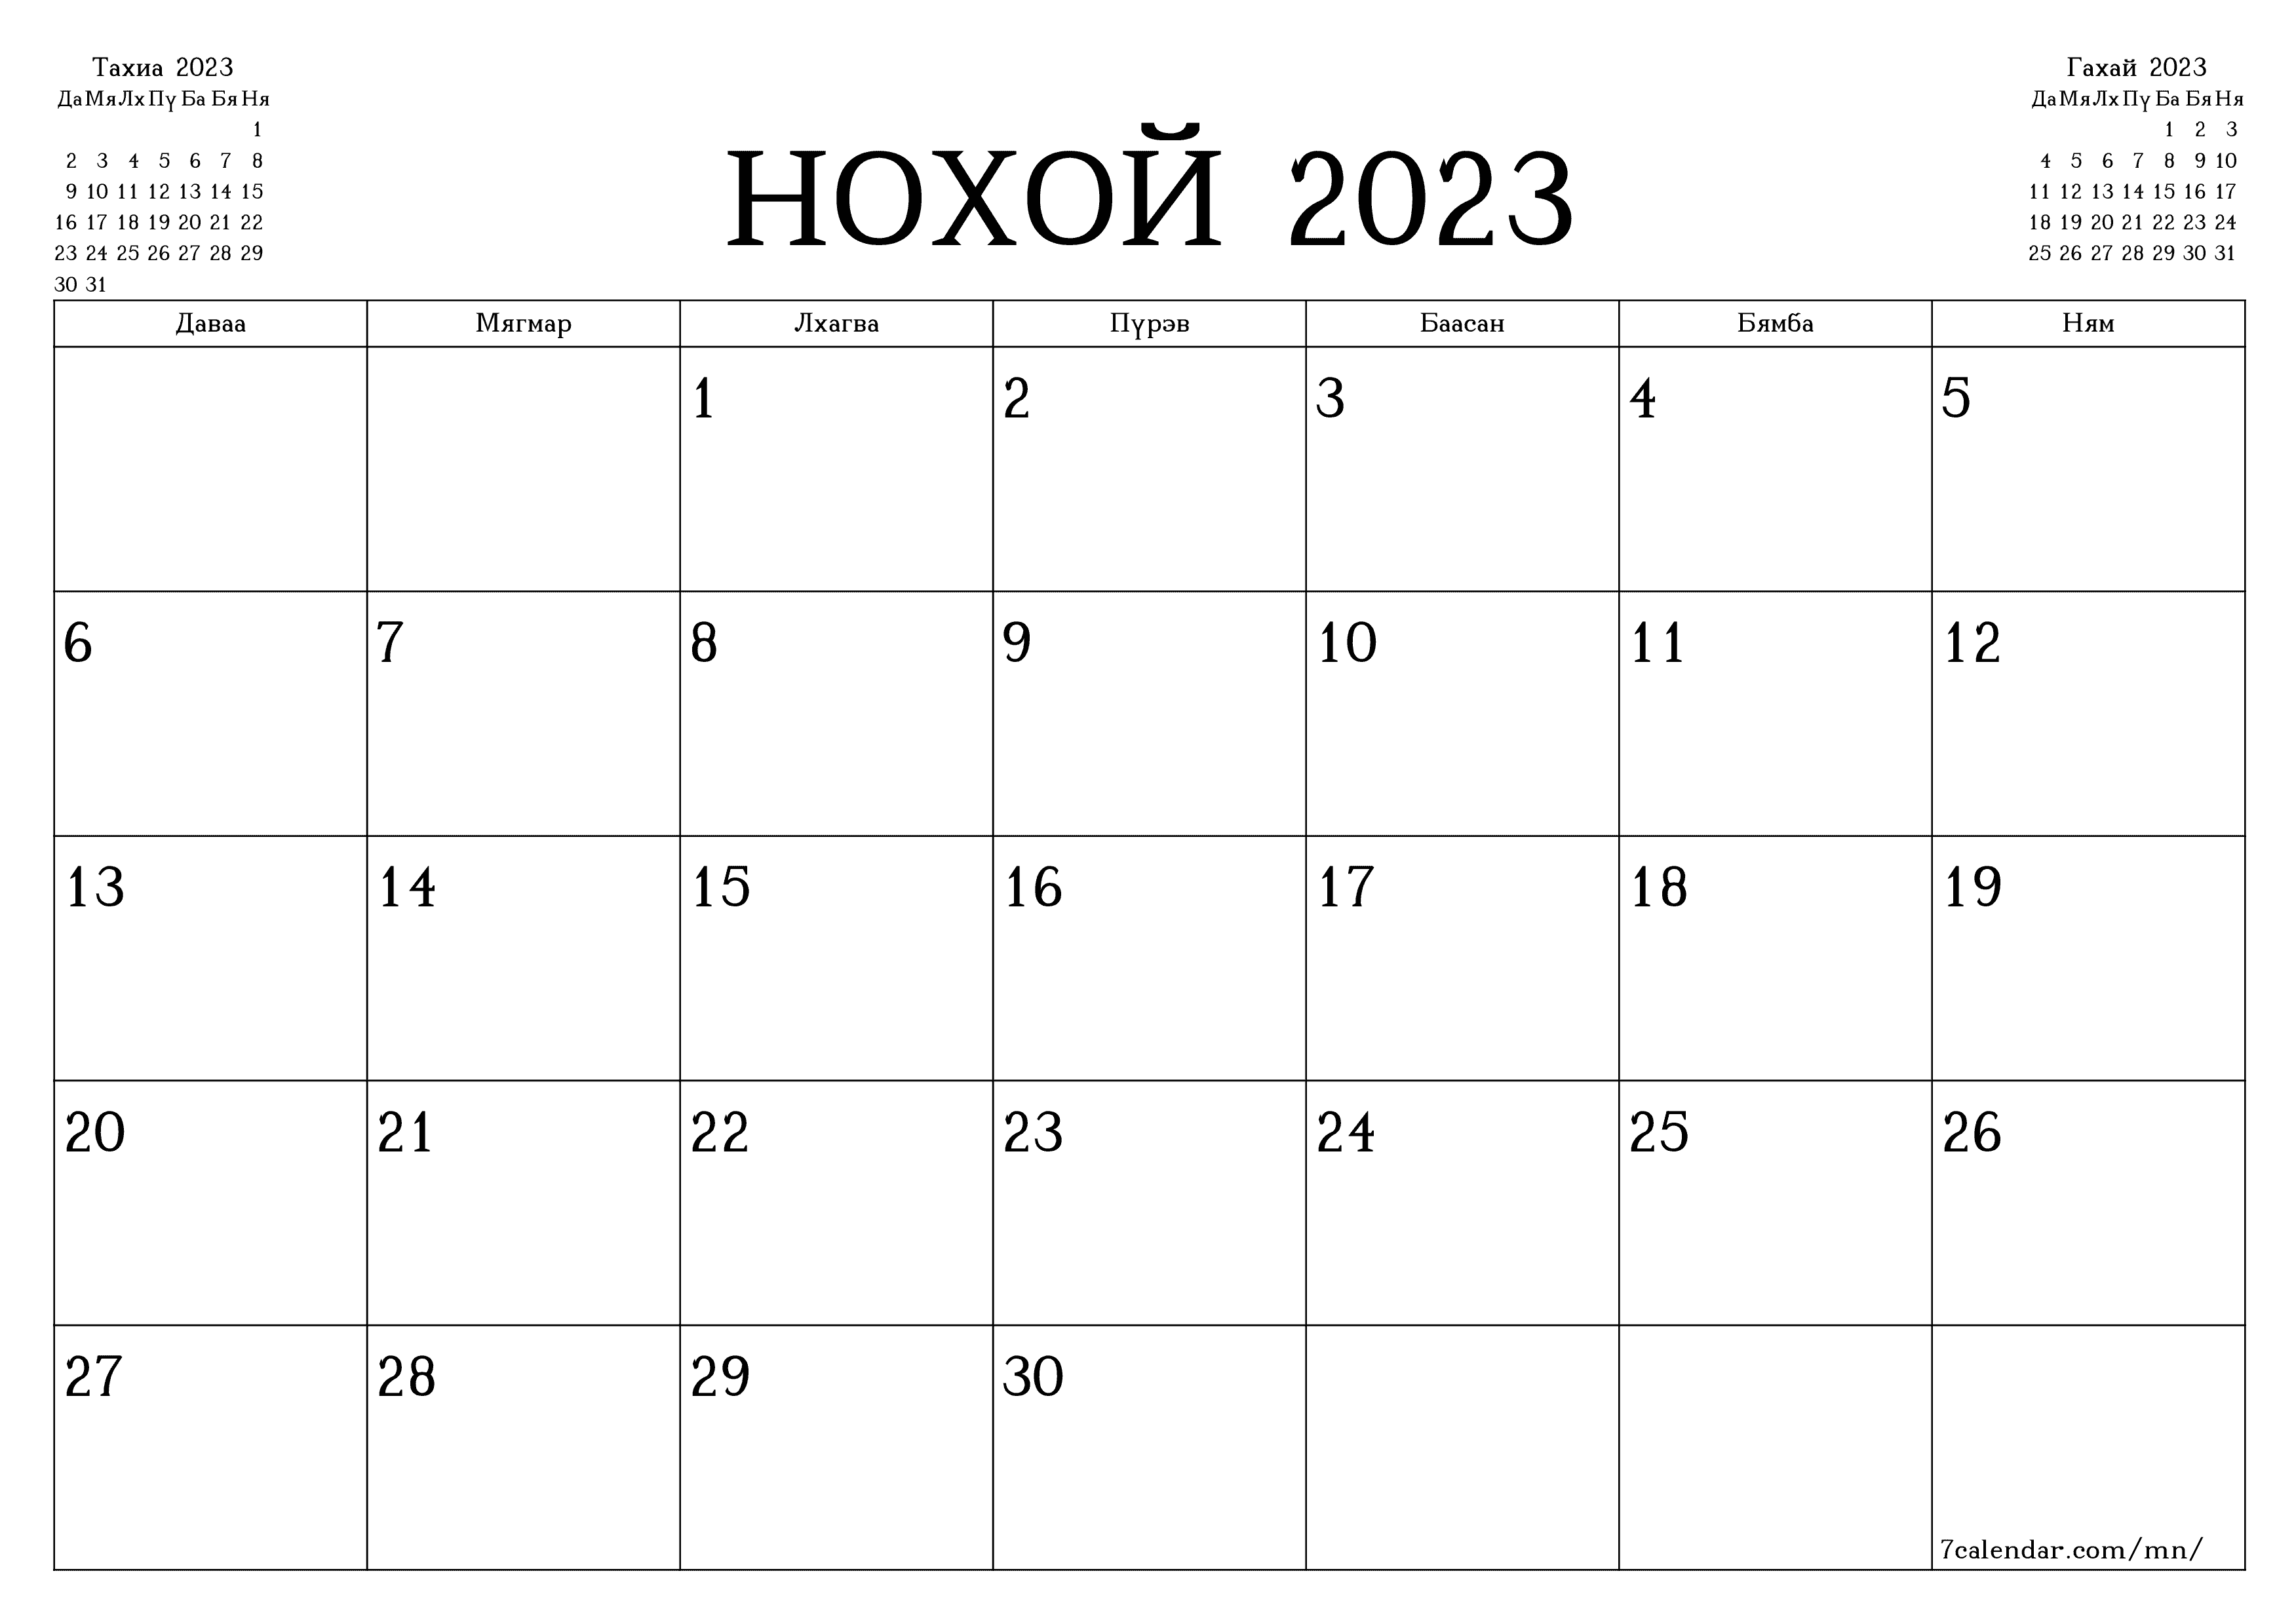 хэвлэх боломжтой ханын календарийн загвар үнэгүй хэвтээ Сар бүр төлөвлөгч хуанли Нохой (Нох) 2023